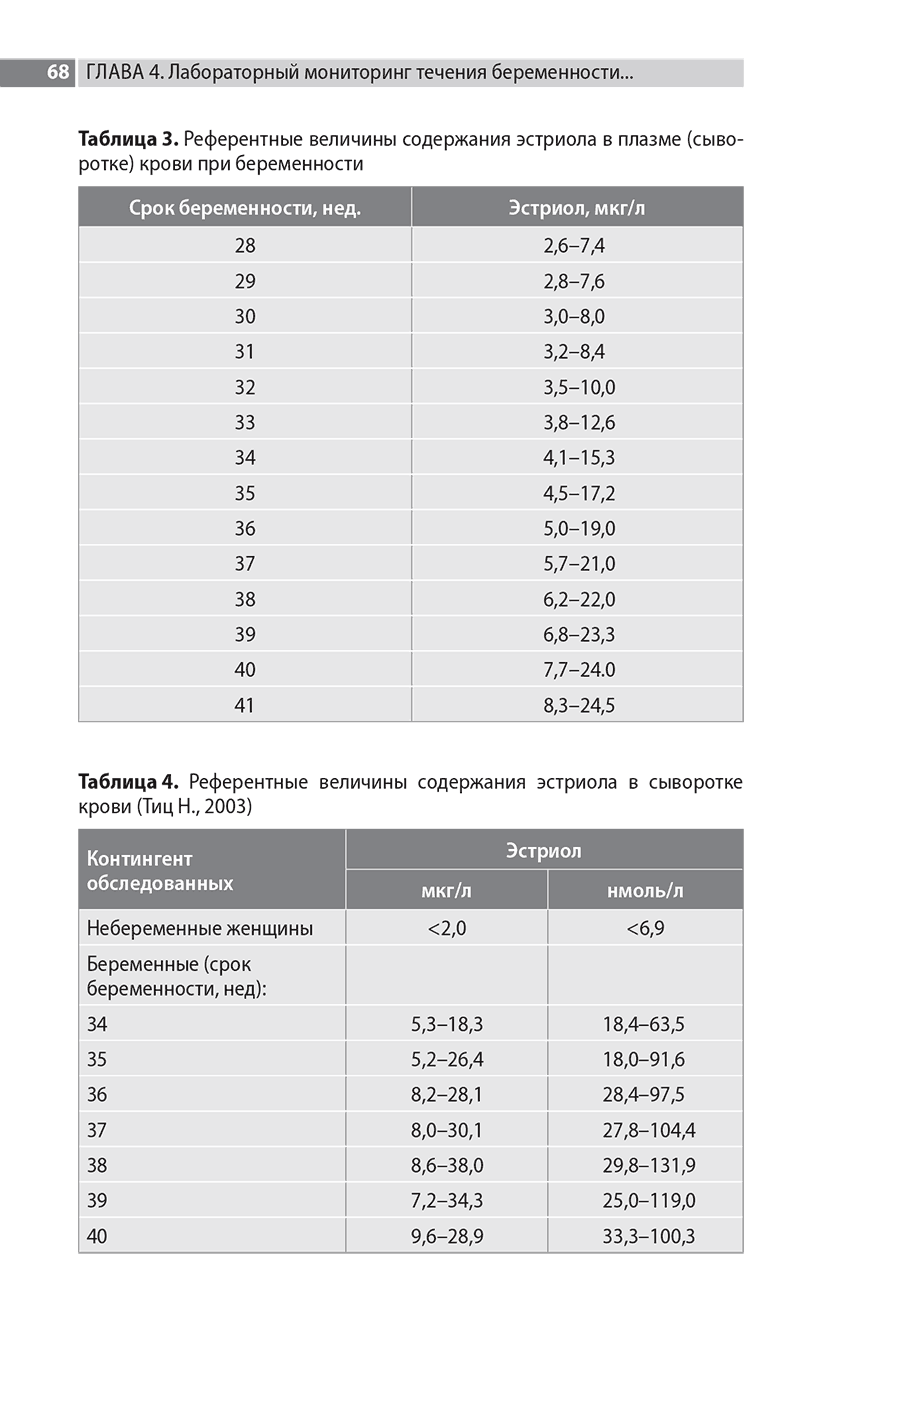 Таблица 3. Референтные величины содержания эстриола в плазме